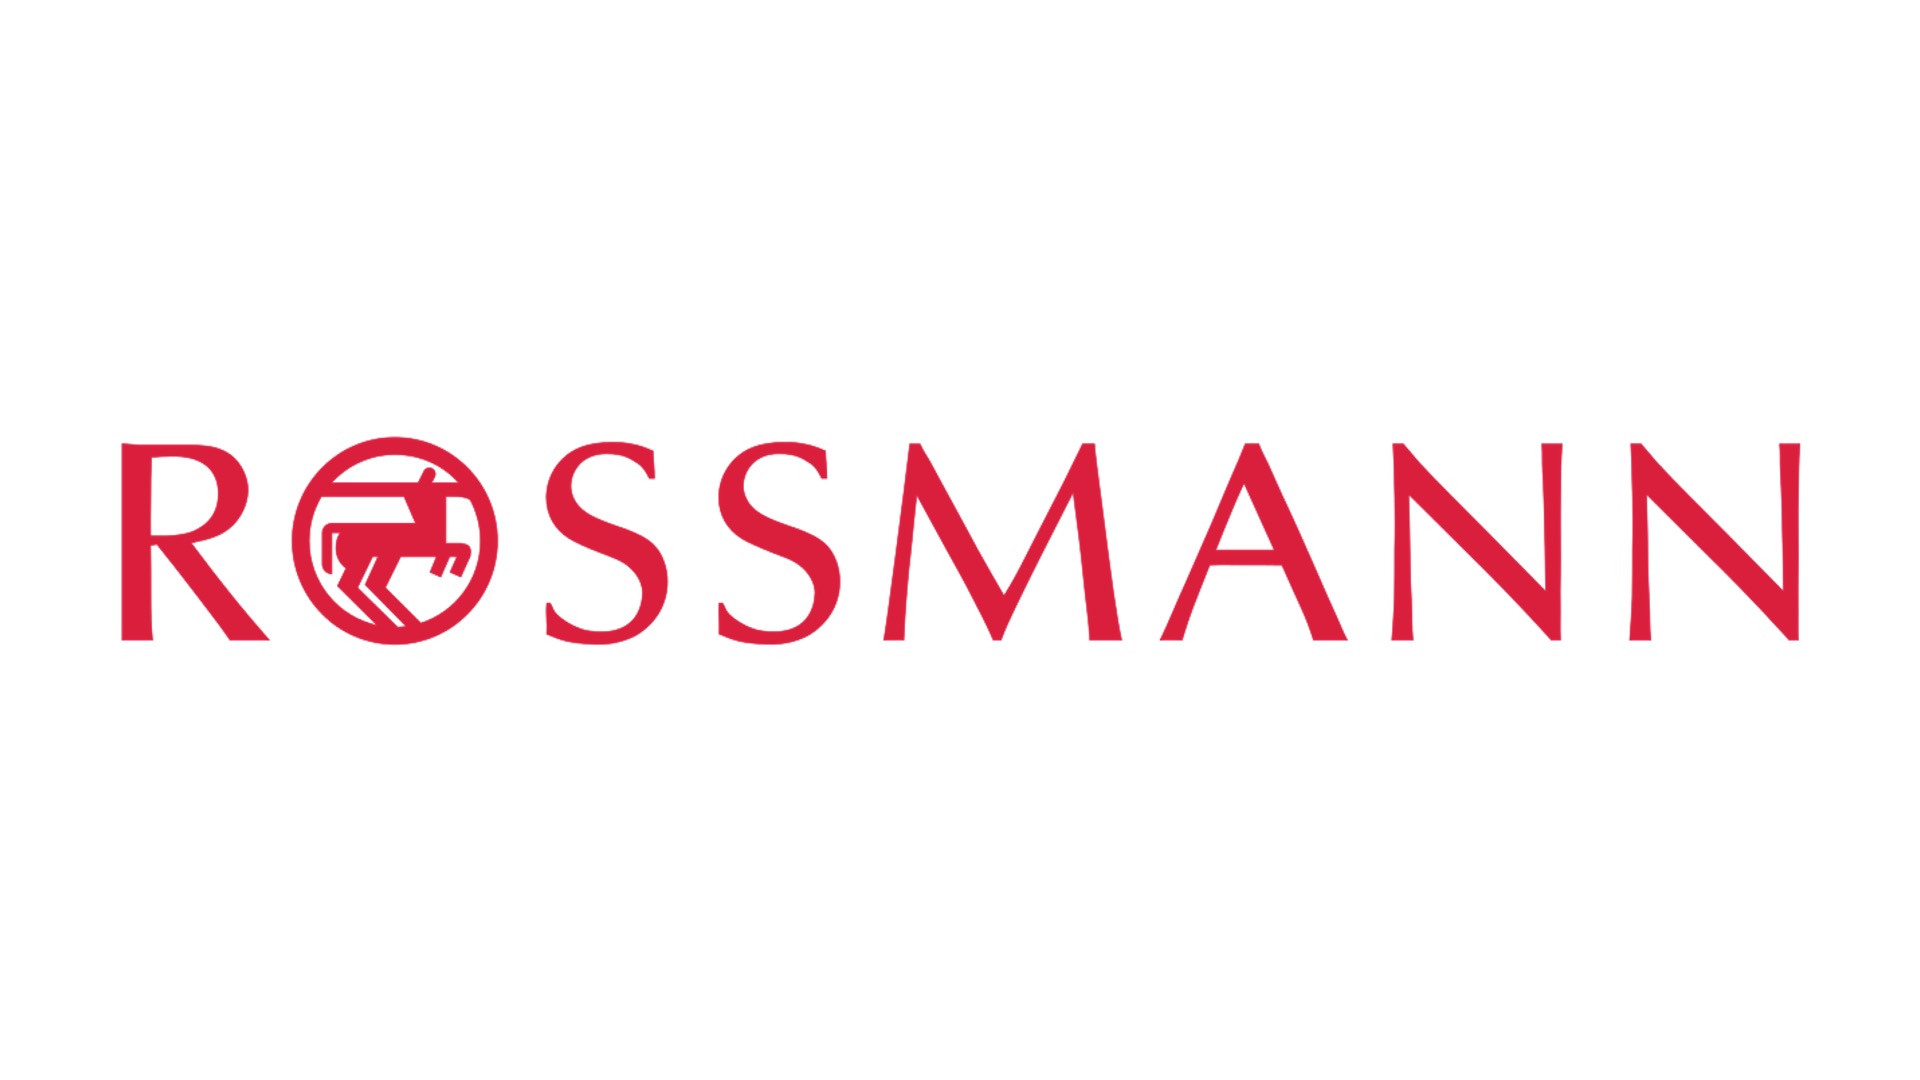 Rossmann -  Europas zweitgrößte Drogeriemarktkette und ihre beeindruckende Erfolgsgeschichte